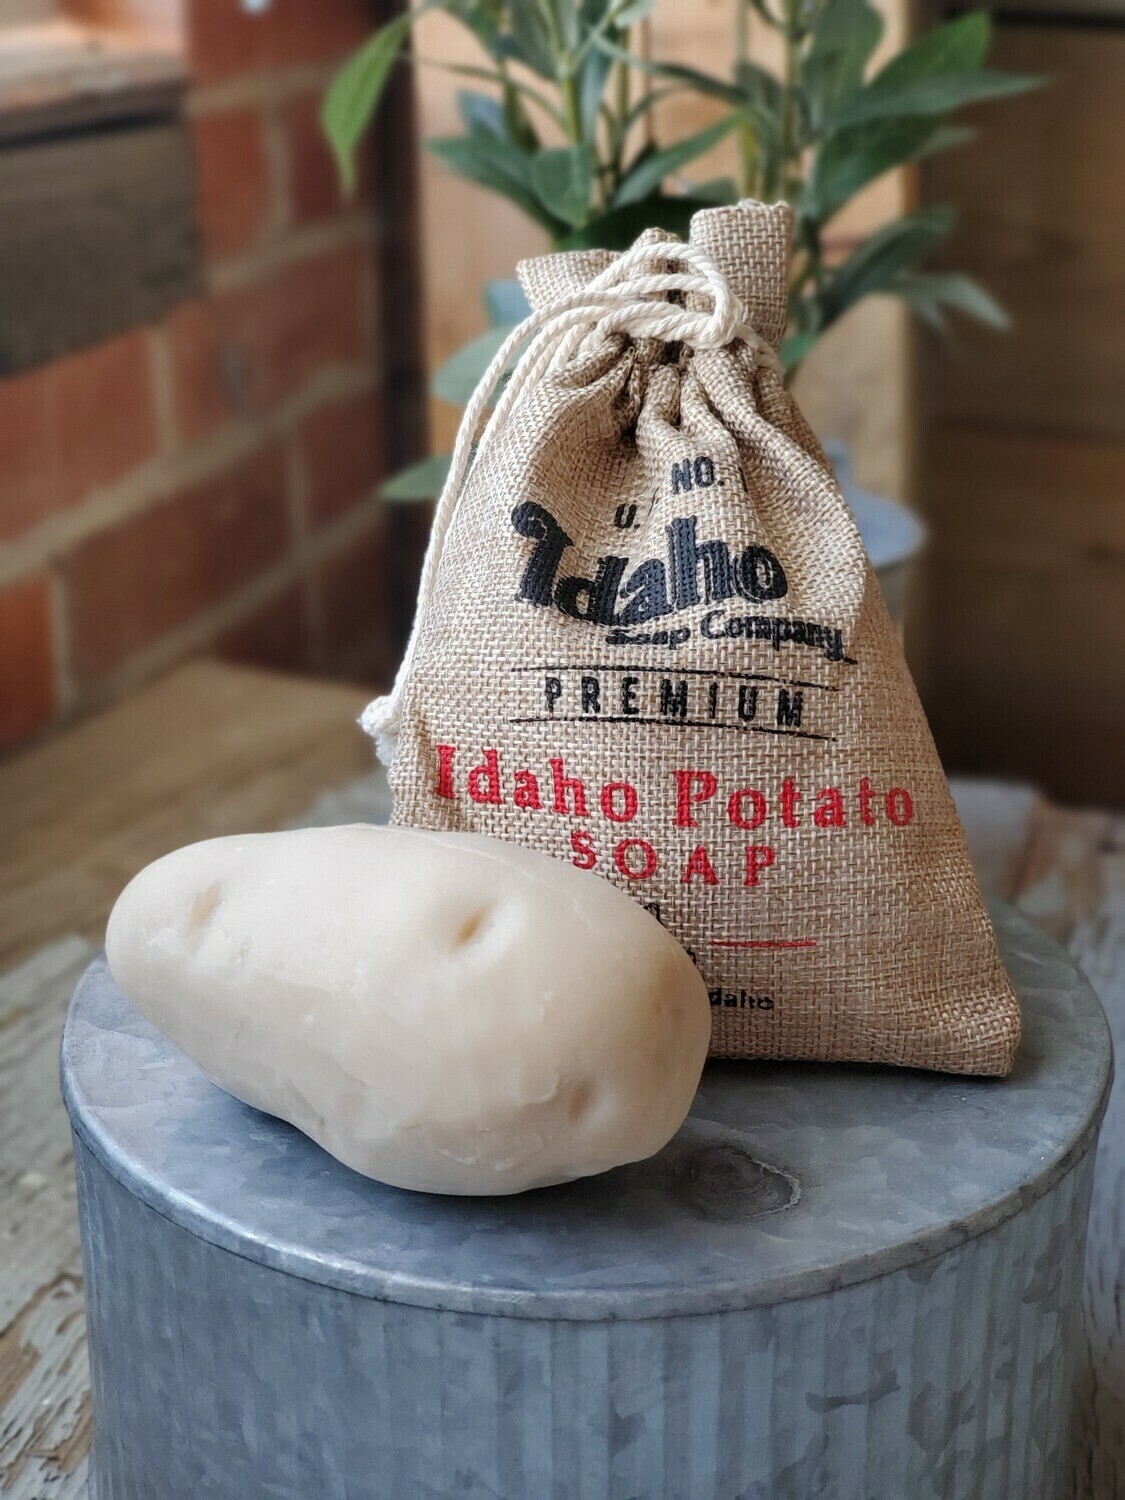 Idaho Potato Soap Huckleberry